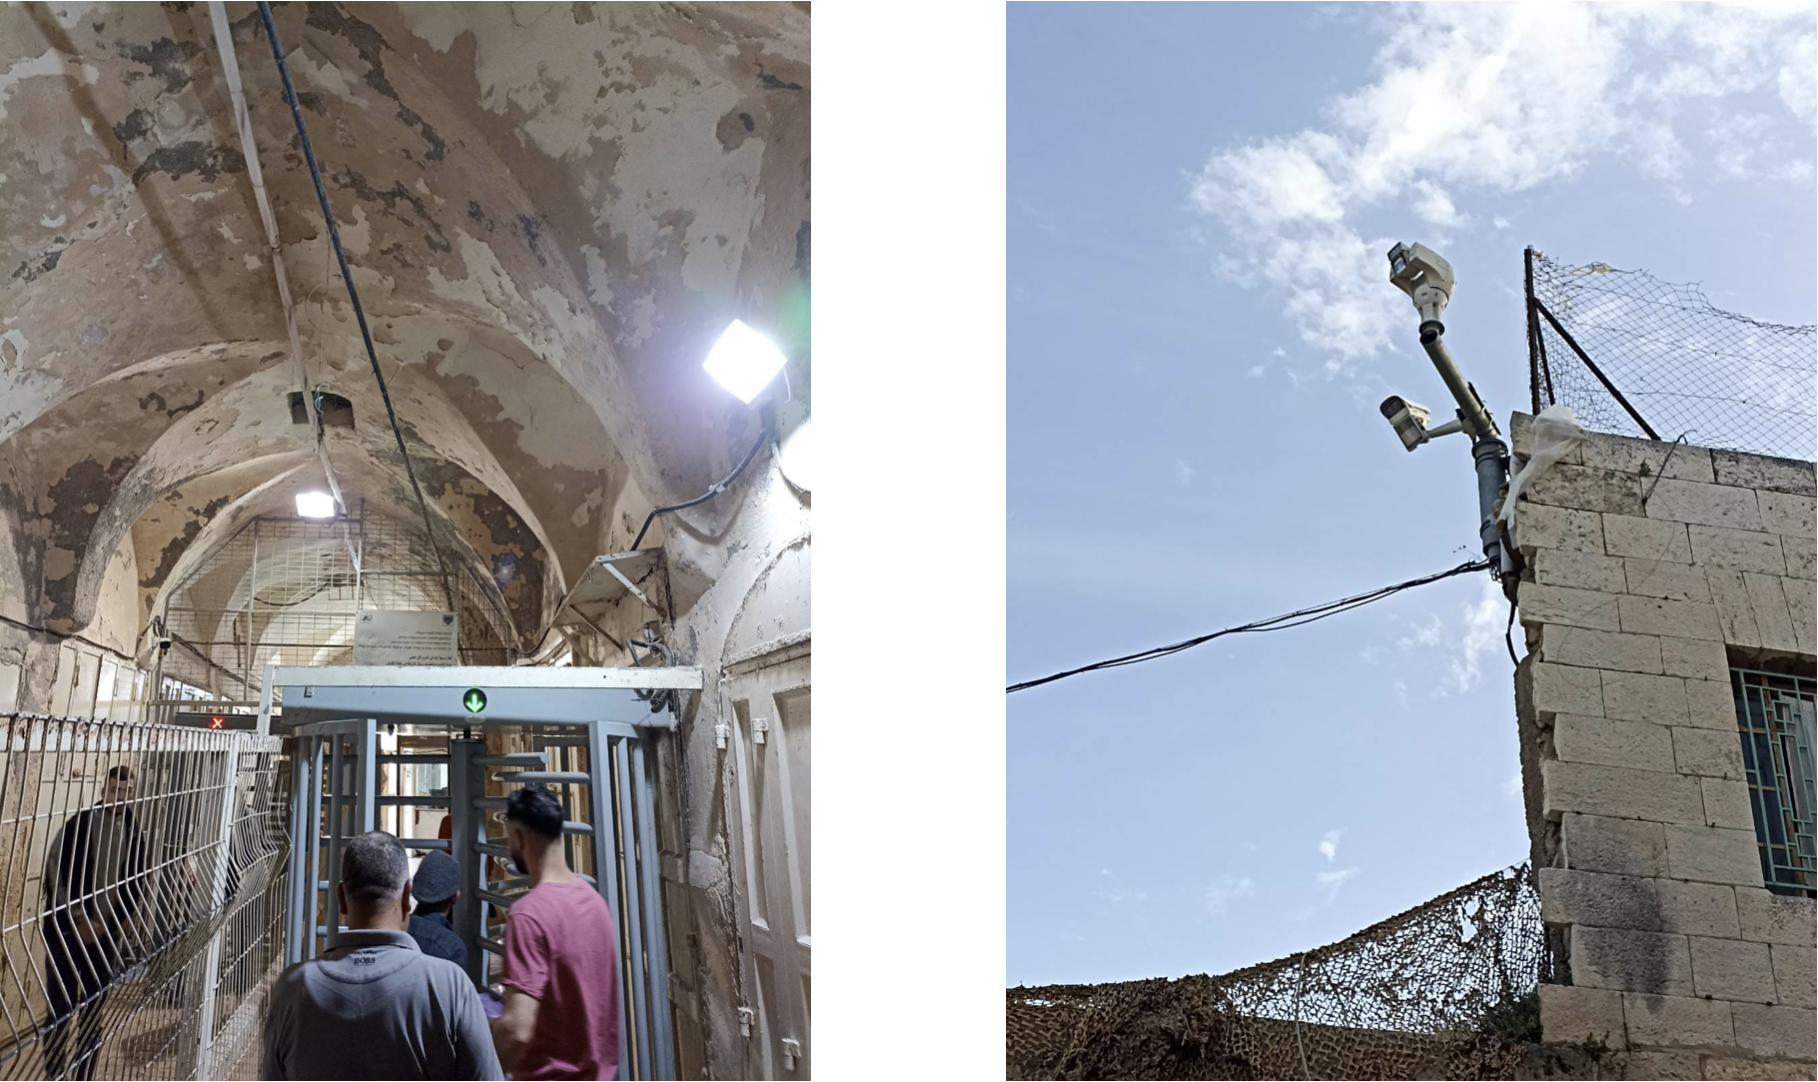 Foto links: Checkpoint, durch den die Palästinenser:innen der H2-Zone täglich gehen müssen. Foto rechts: eine der vielen israelischen Überwachungskameras an Gebäuden in der H2-Zone. Fotos: Izzat Karaki